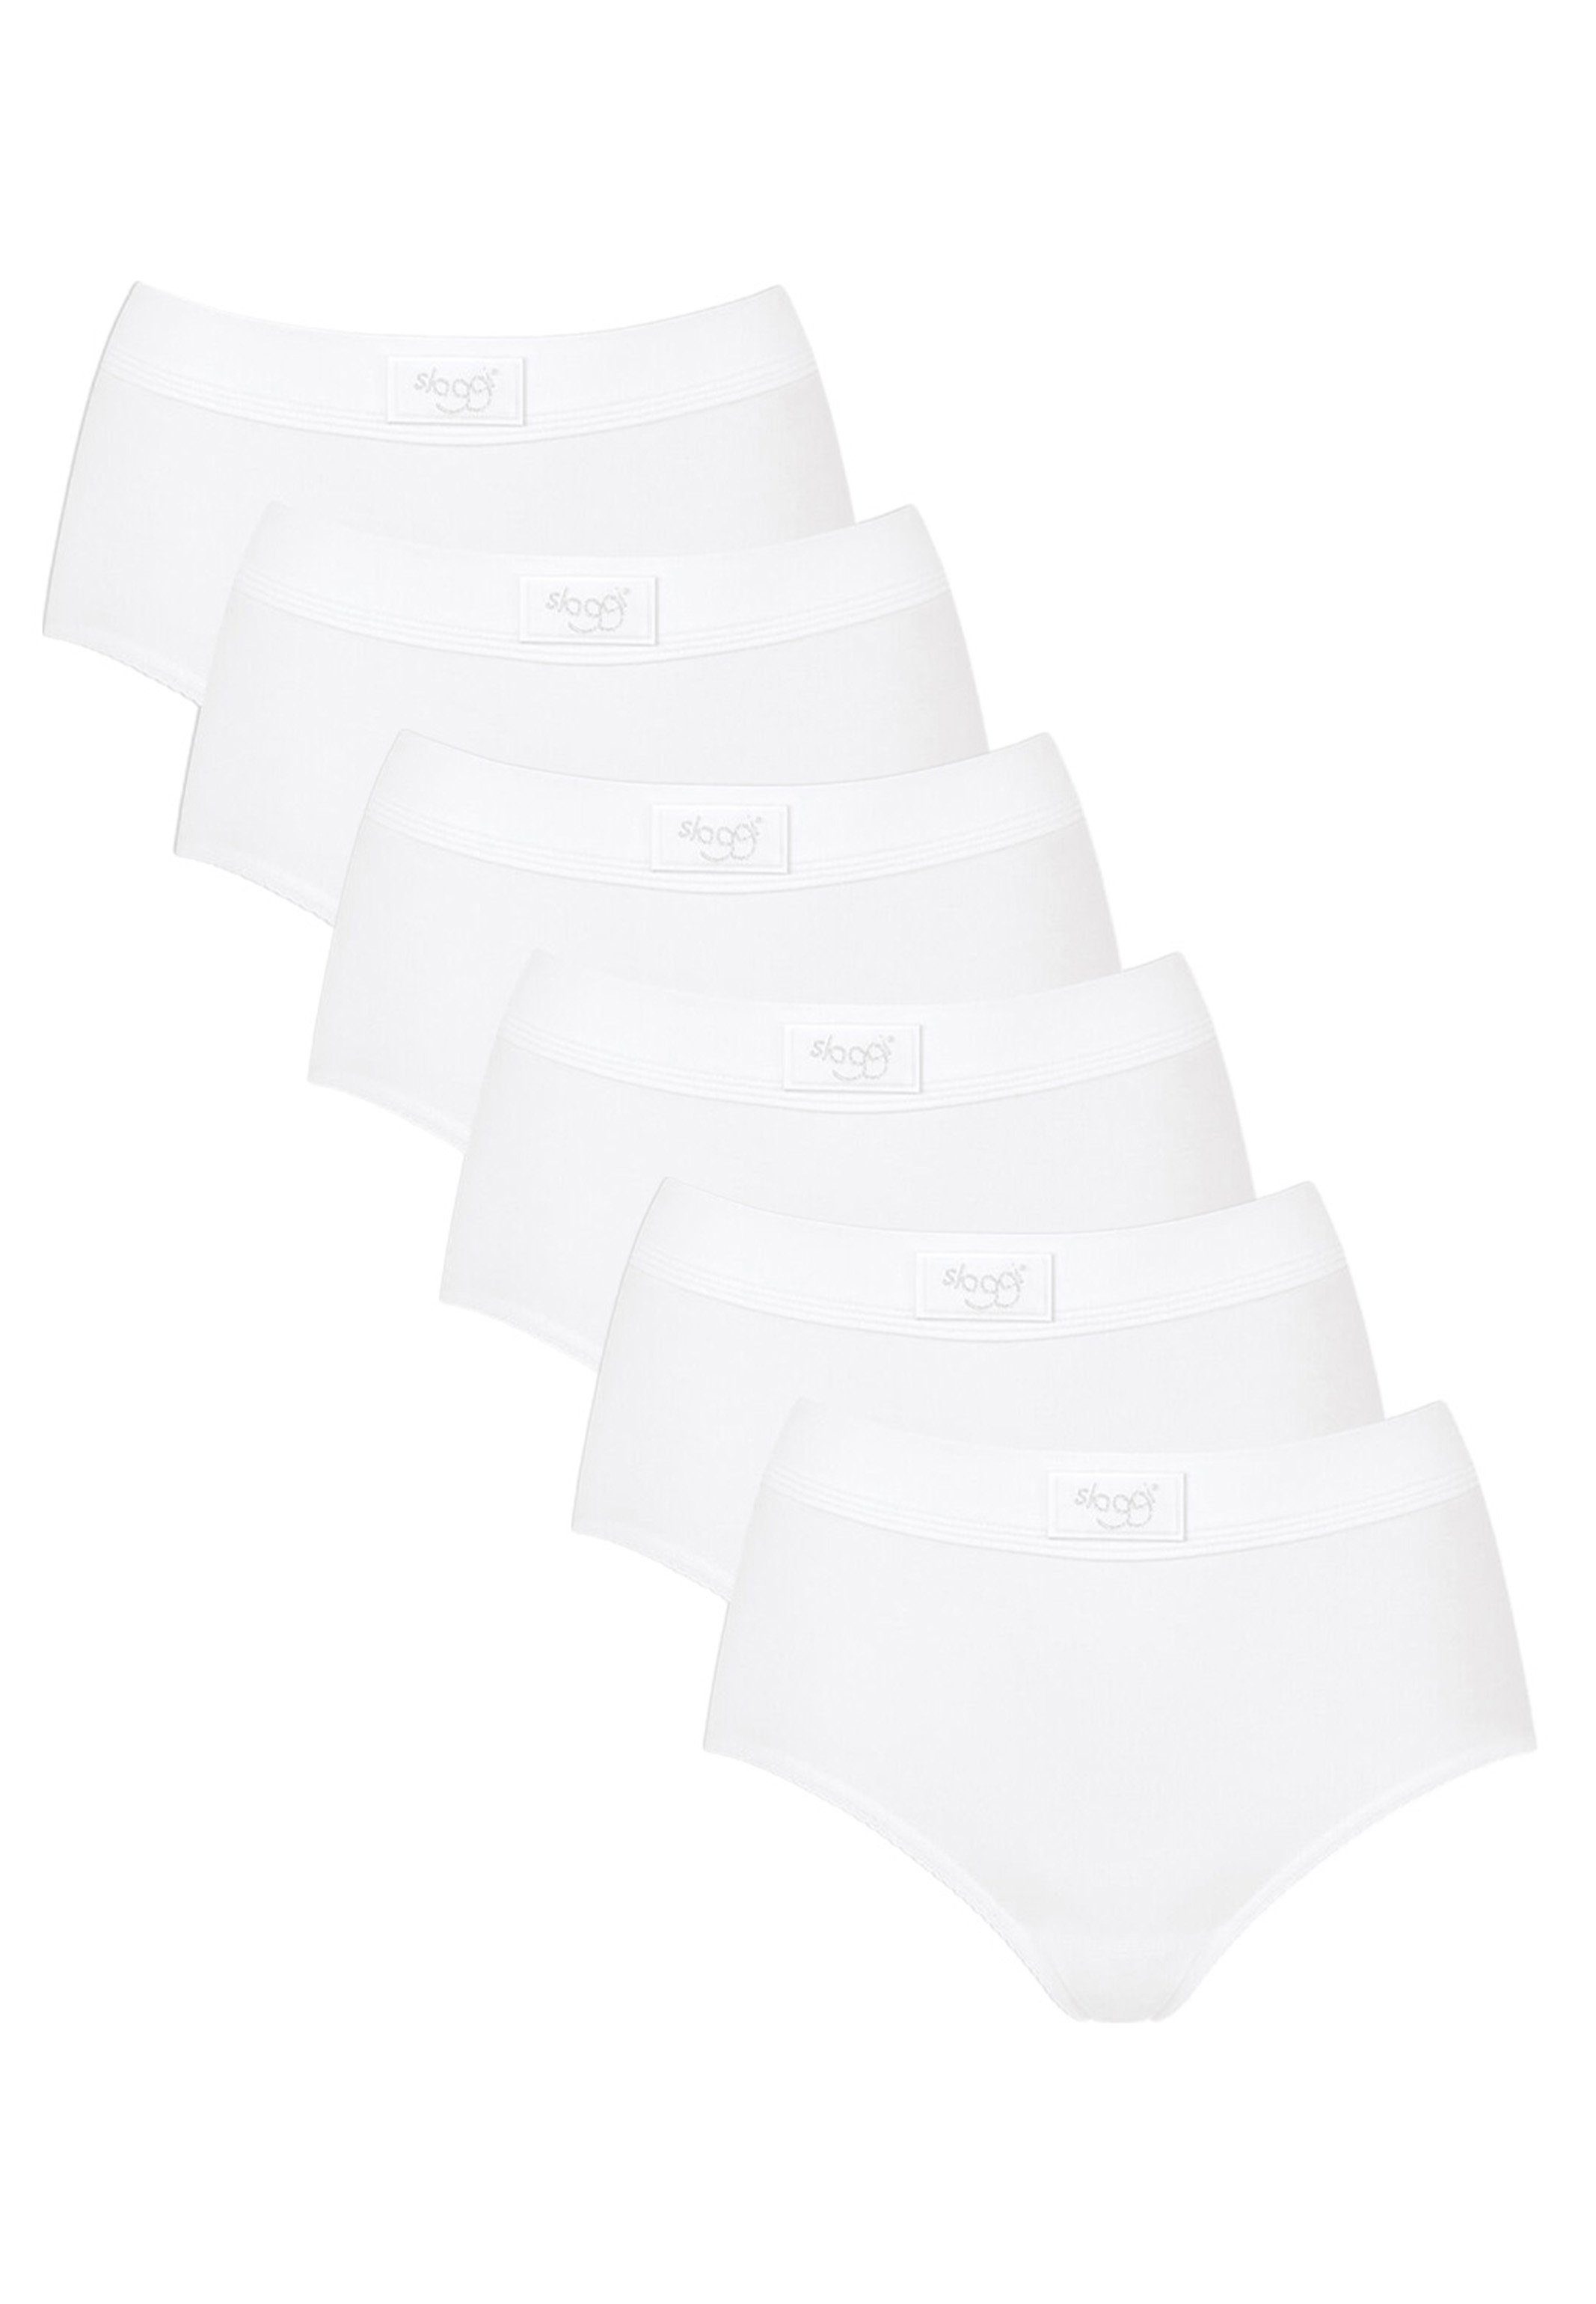 Sloggi Tai-Slip 6er Pack Double (Spar-Set, - 6-St) Maxi Weiß - Details Perfekter Sitz, feinen Comfort Mit Wärmend Slip Baumwolle 